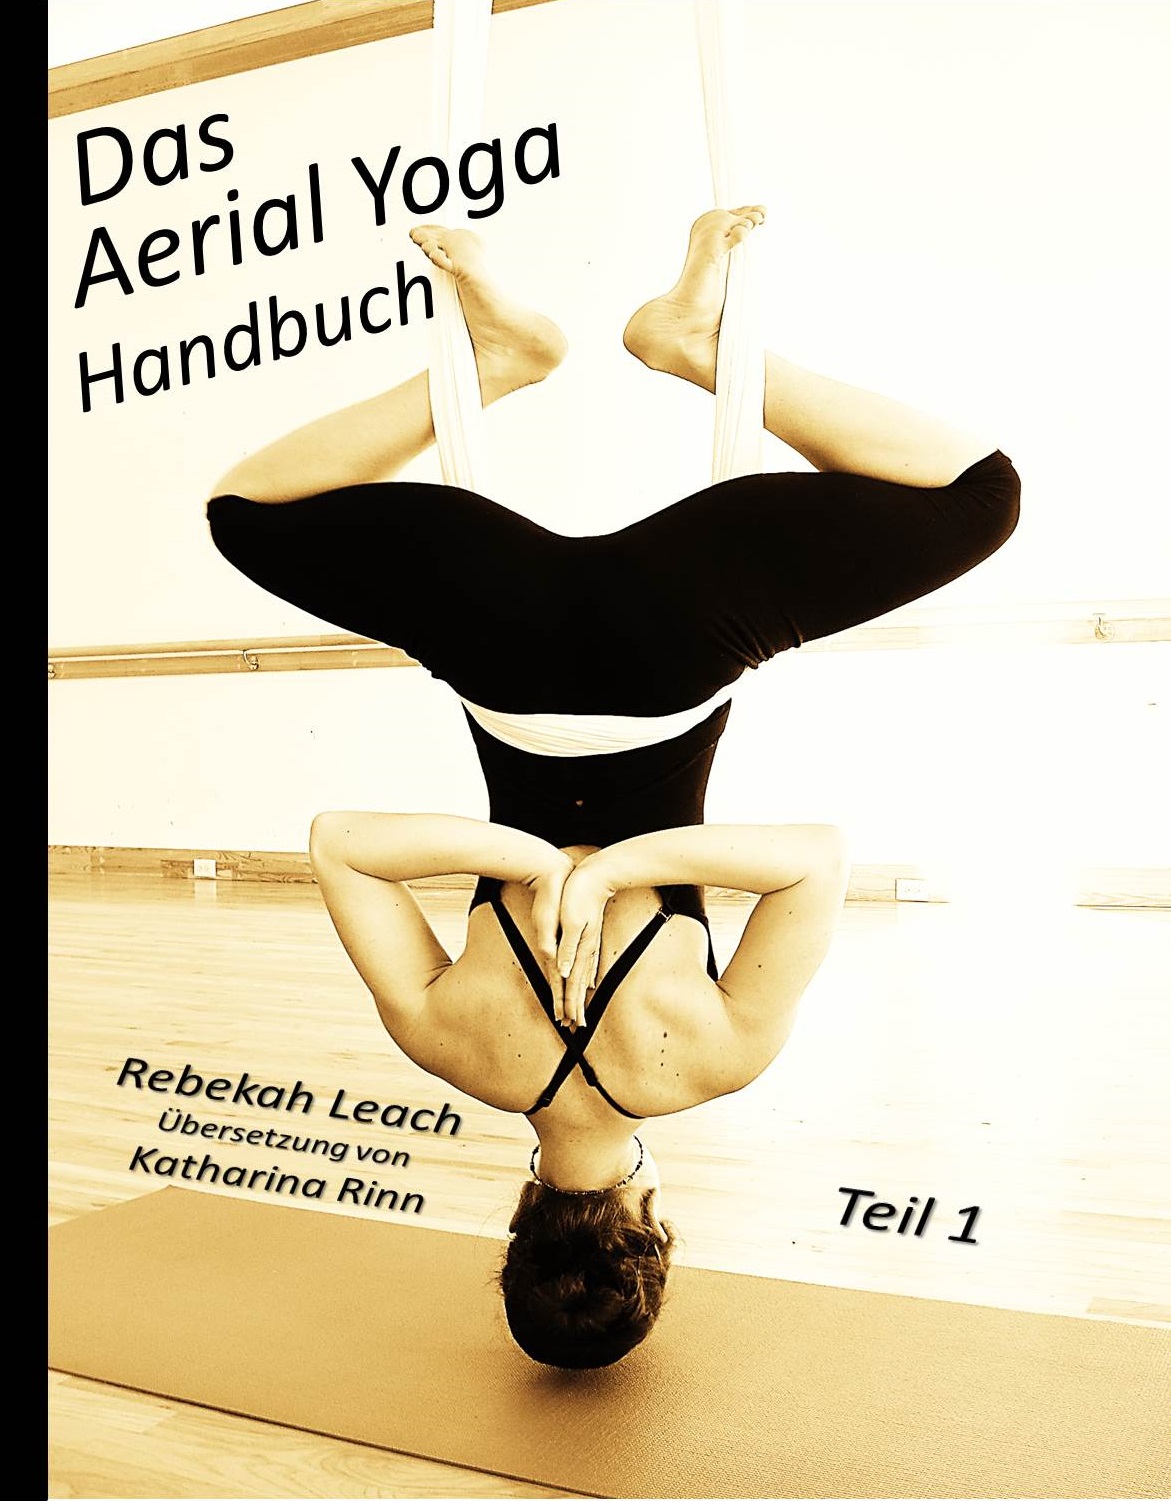 Das Aerial Yoga Handbuch Teil 1 is Here! www.aerialdancing image